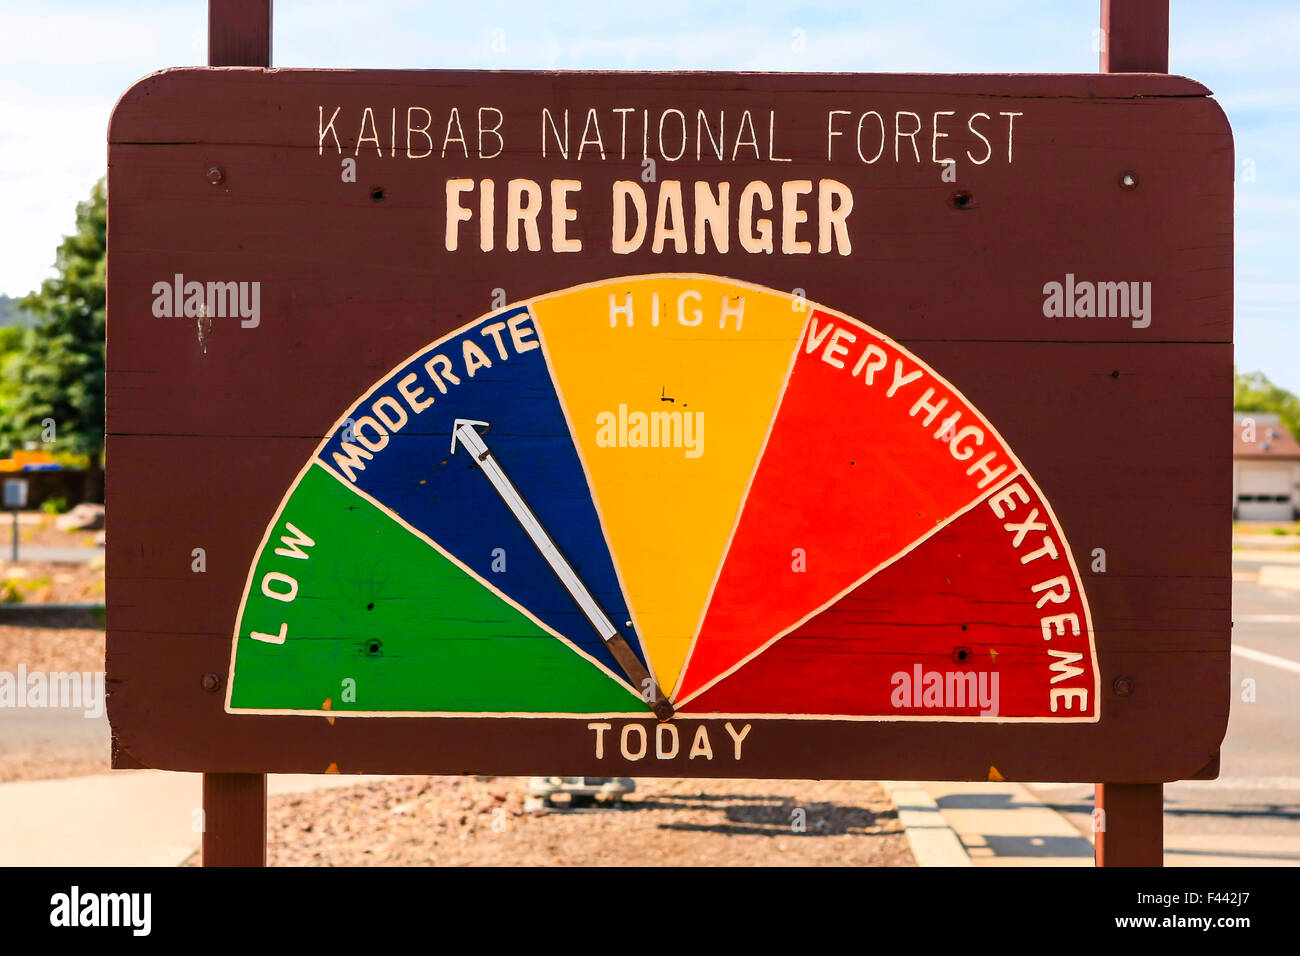 Kaibab National Forest Fire Monitor Warnschild mit einer Lesung von moderaten Chance Feuer an diesem Tag Stockfoto